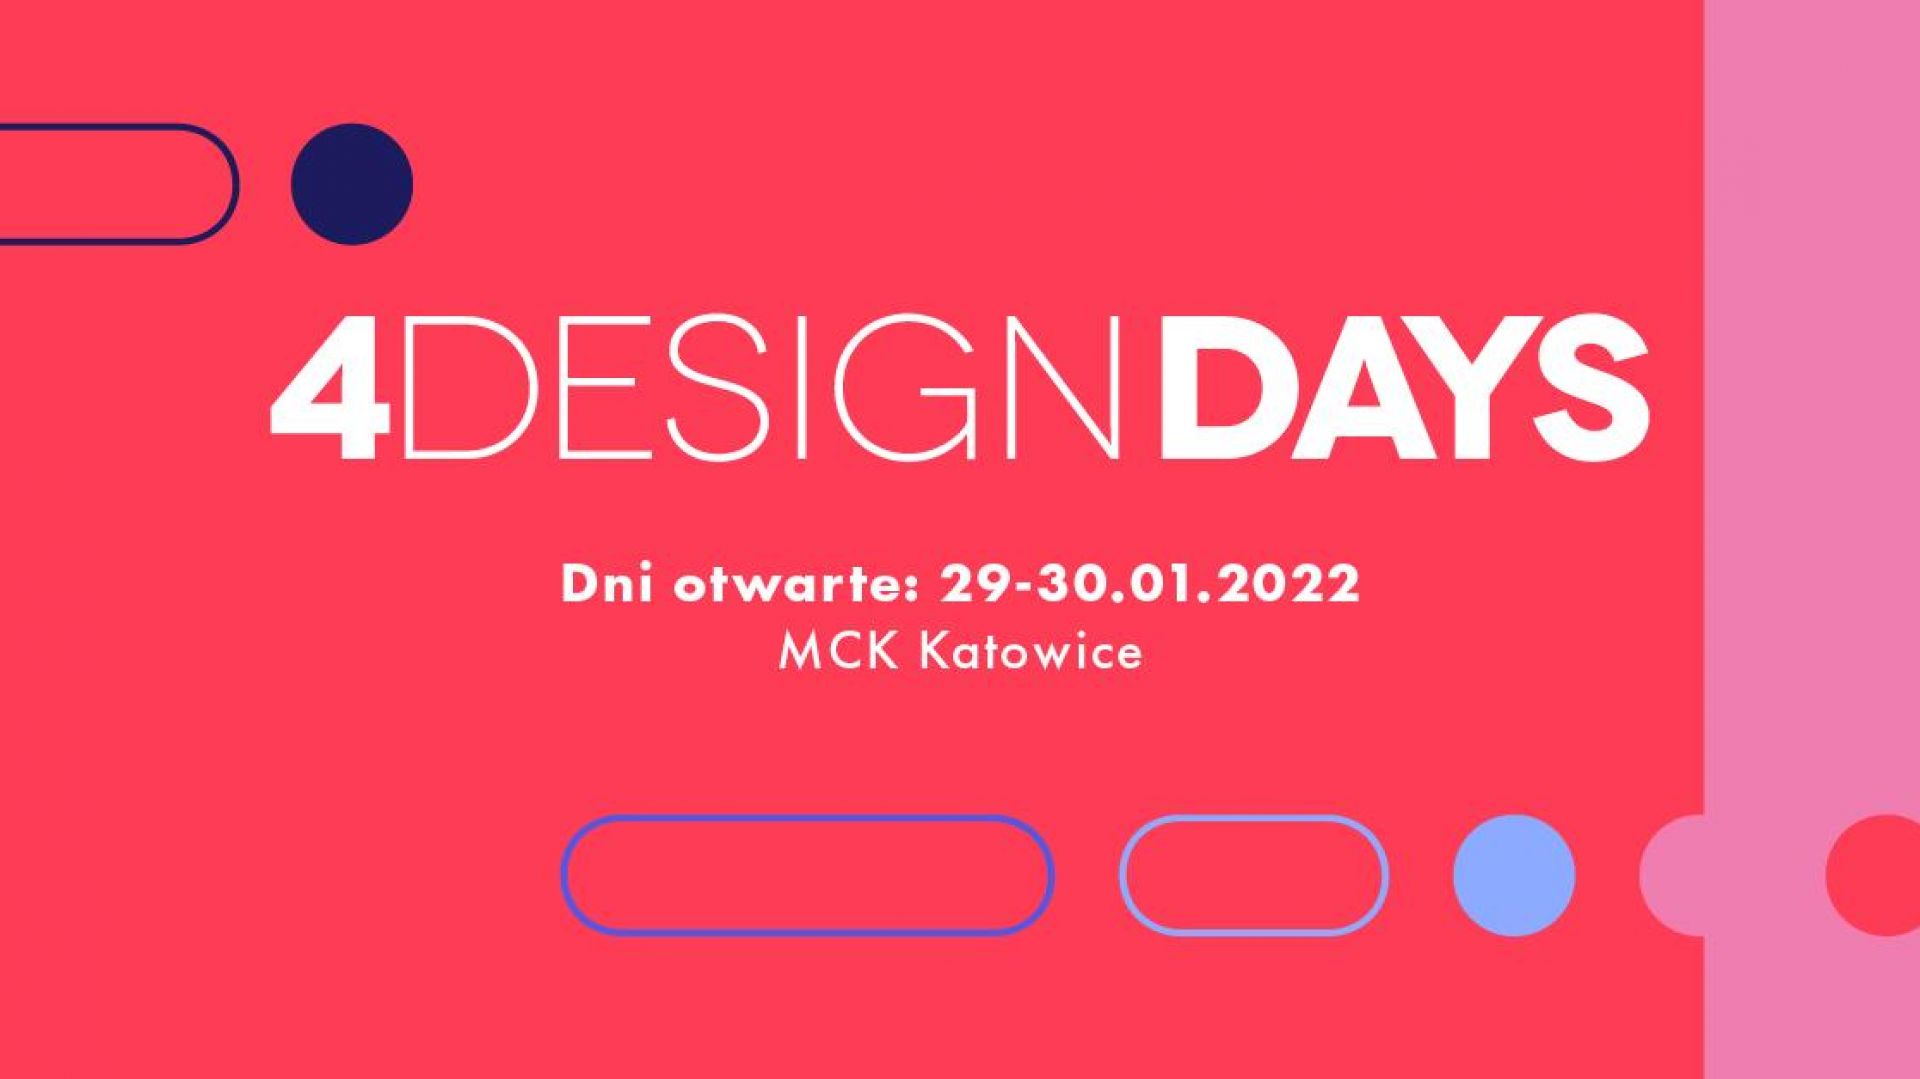 4 Design Days 2022 już od 27 stycznia! W programie mnóstwo atrakcji dla odwiedzających!